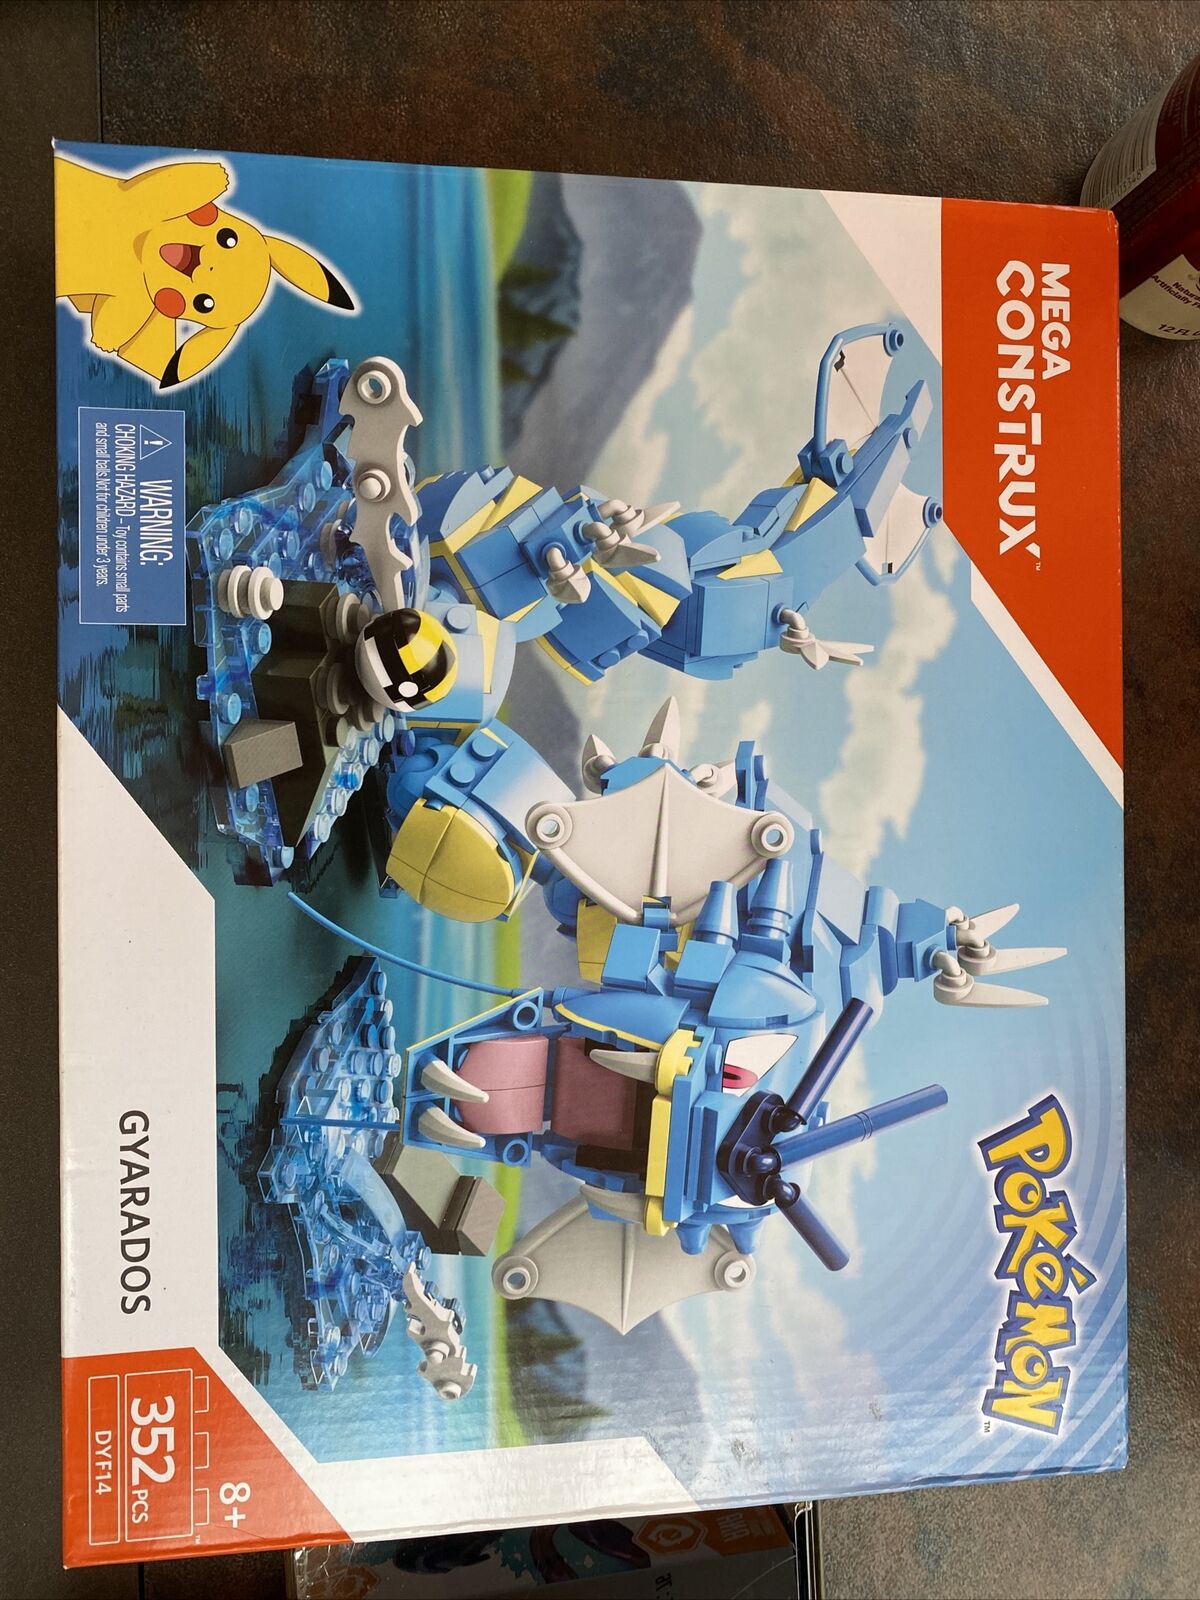 MEGA Construx Pokemon Gyarados Building Set - DYF14 for sale